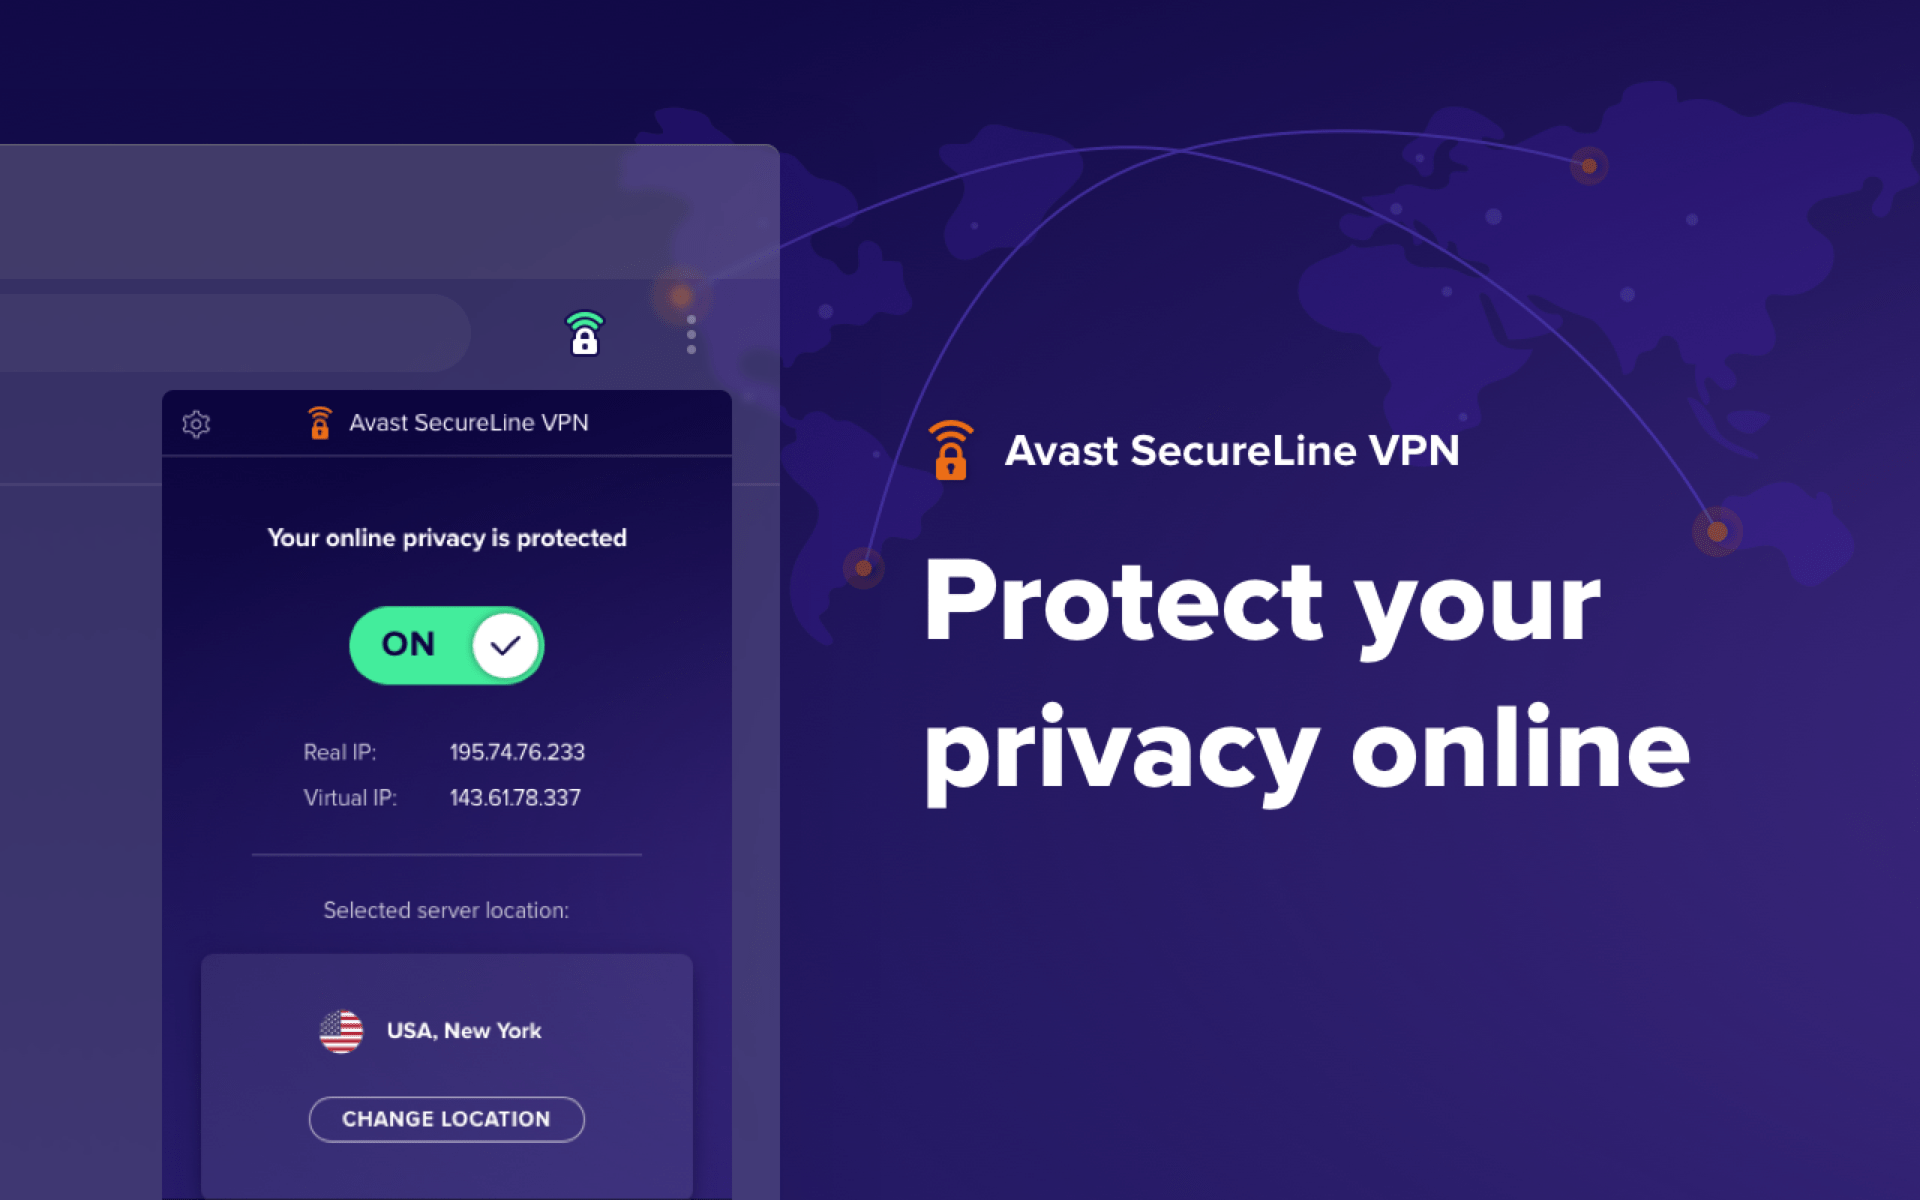 Avast SecureLine VPN obrázek v popisu produktu.